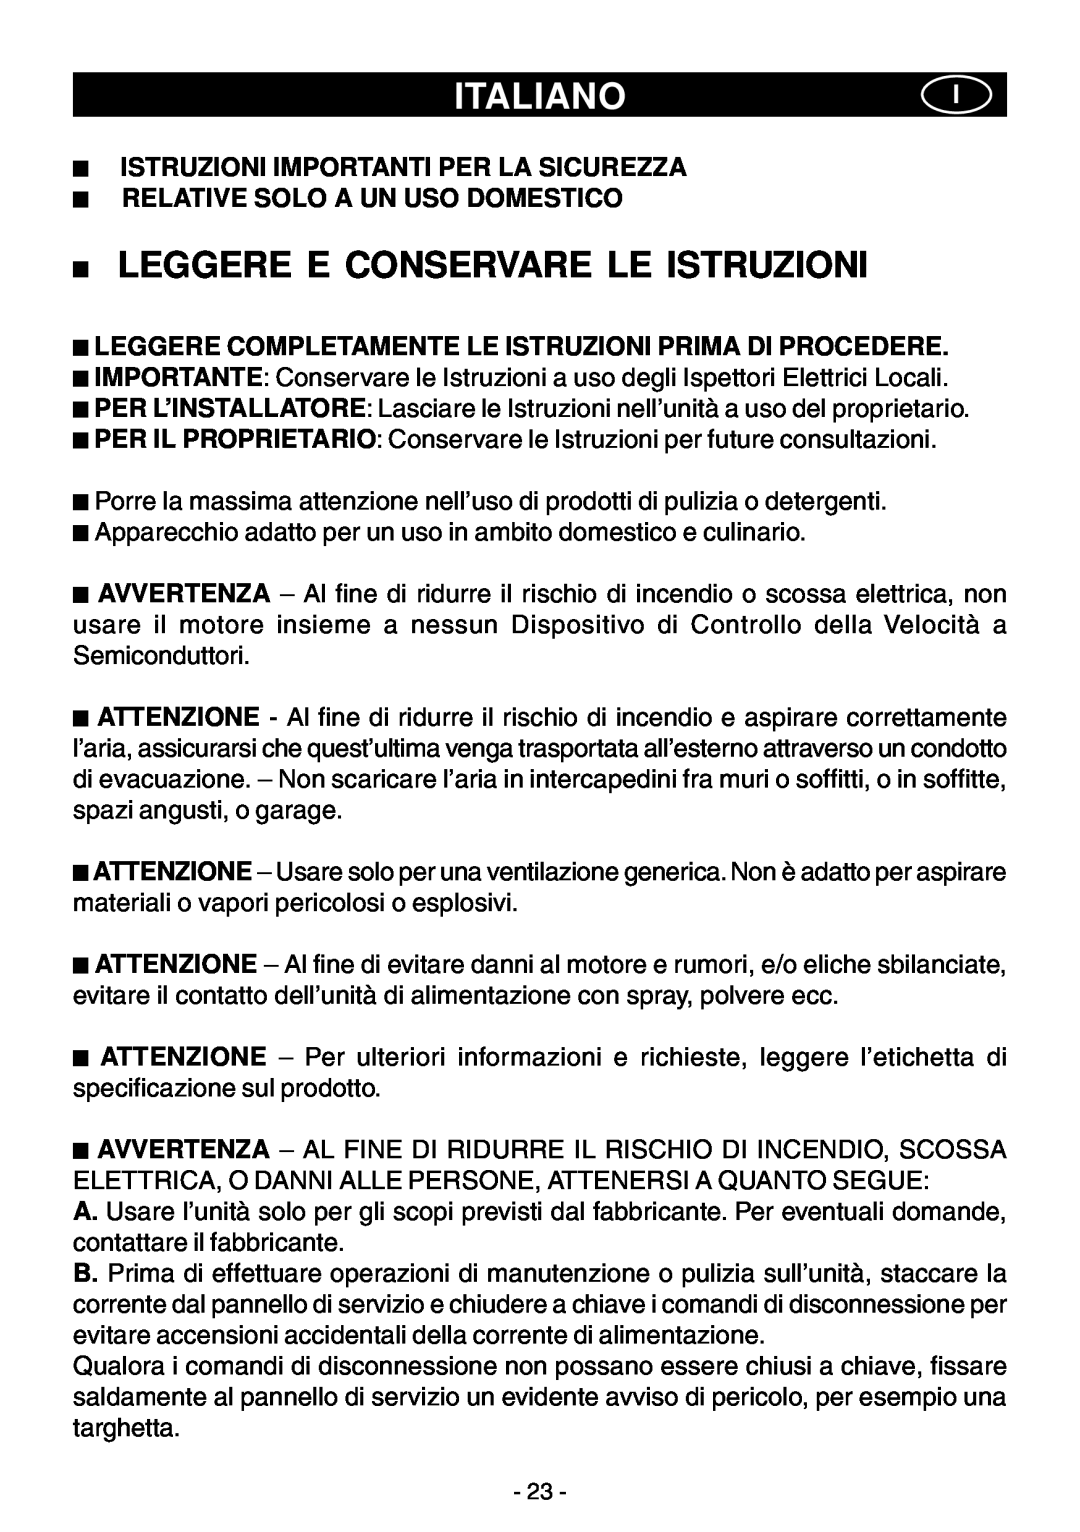 Elitair ZN-36 manual Italianoi, Leggere E Conservare Le Istruzioni, Istruzioni Importanti Per La Sicurezza 